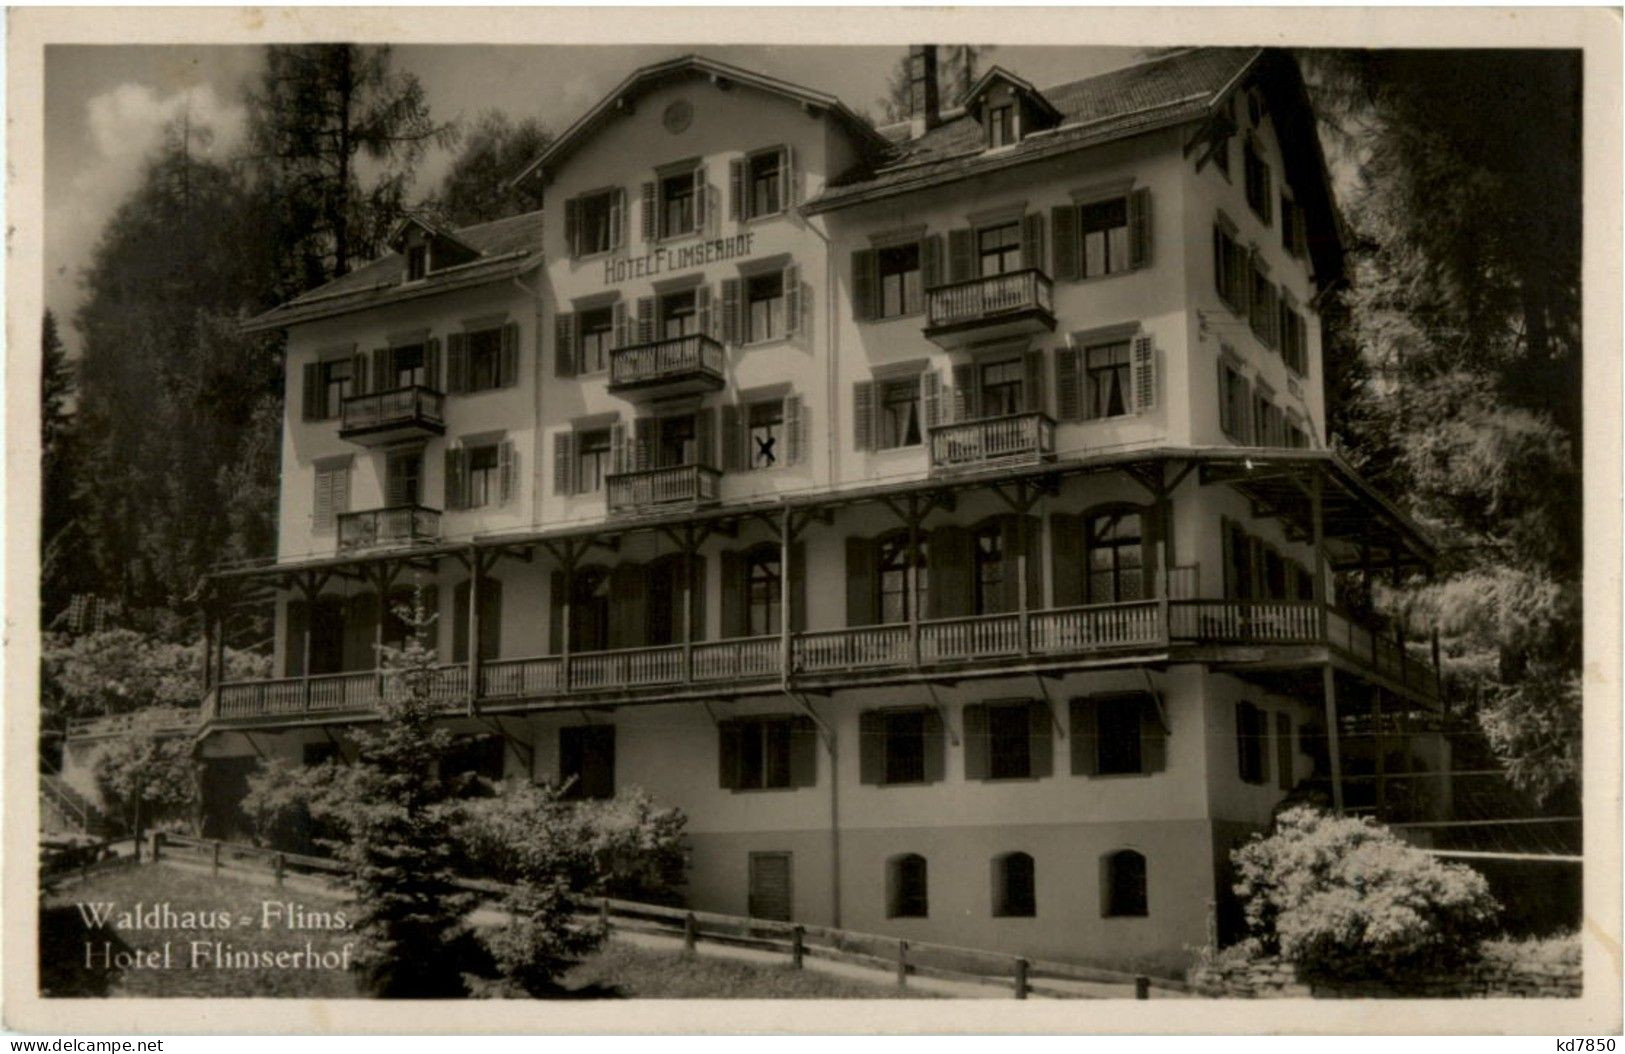 Waldhaus Flims - Hotel Flimserhof - Flims